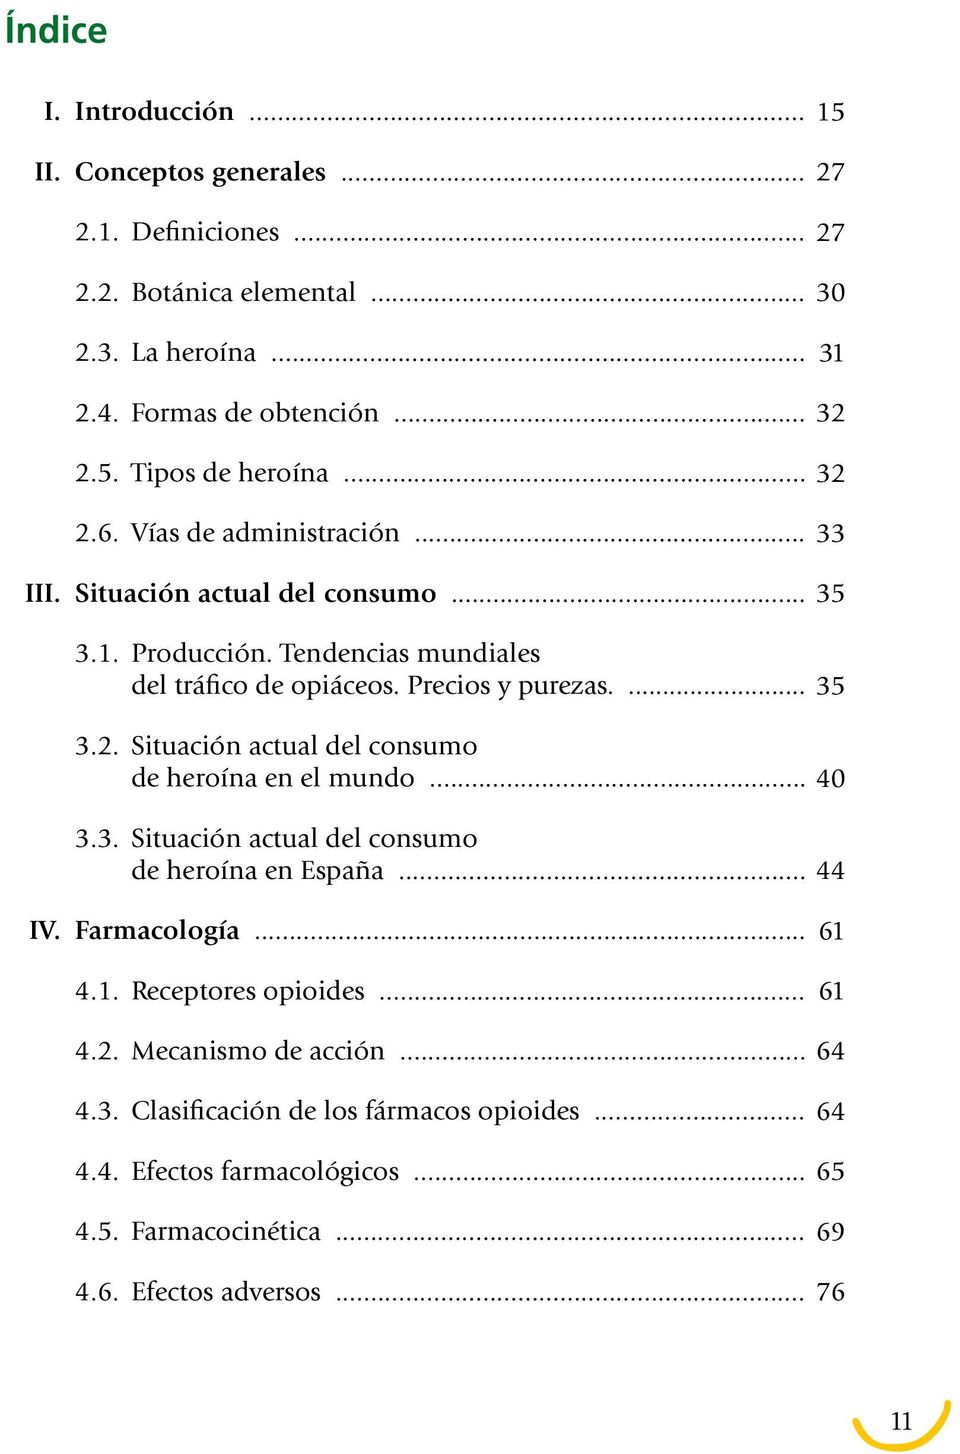 .. 3.3. Situación actual del consumo de heroína en España... 35 40 44 IV. Farmacología... 4.1. Receptores opioides... 61 61 4.2. Mecanismo de acción... 64 4.3. Clasificación de los fármacos opioides.